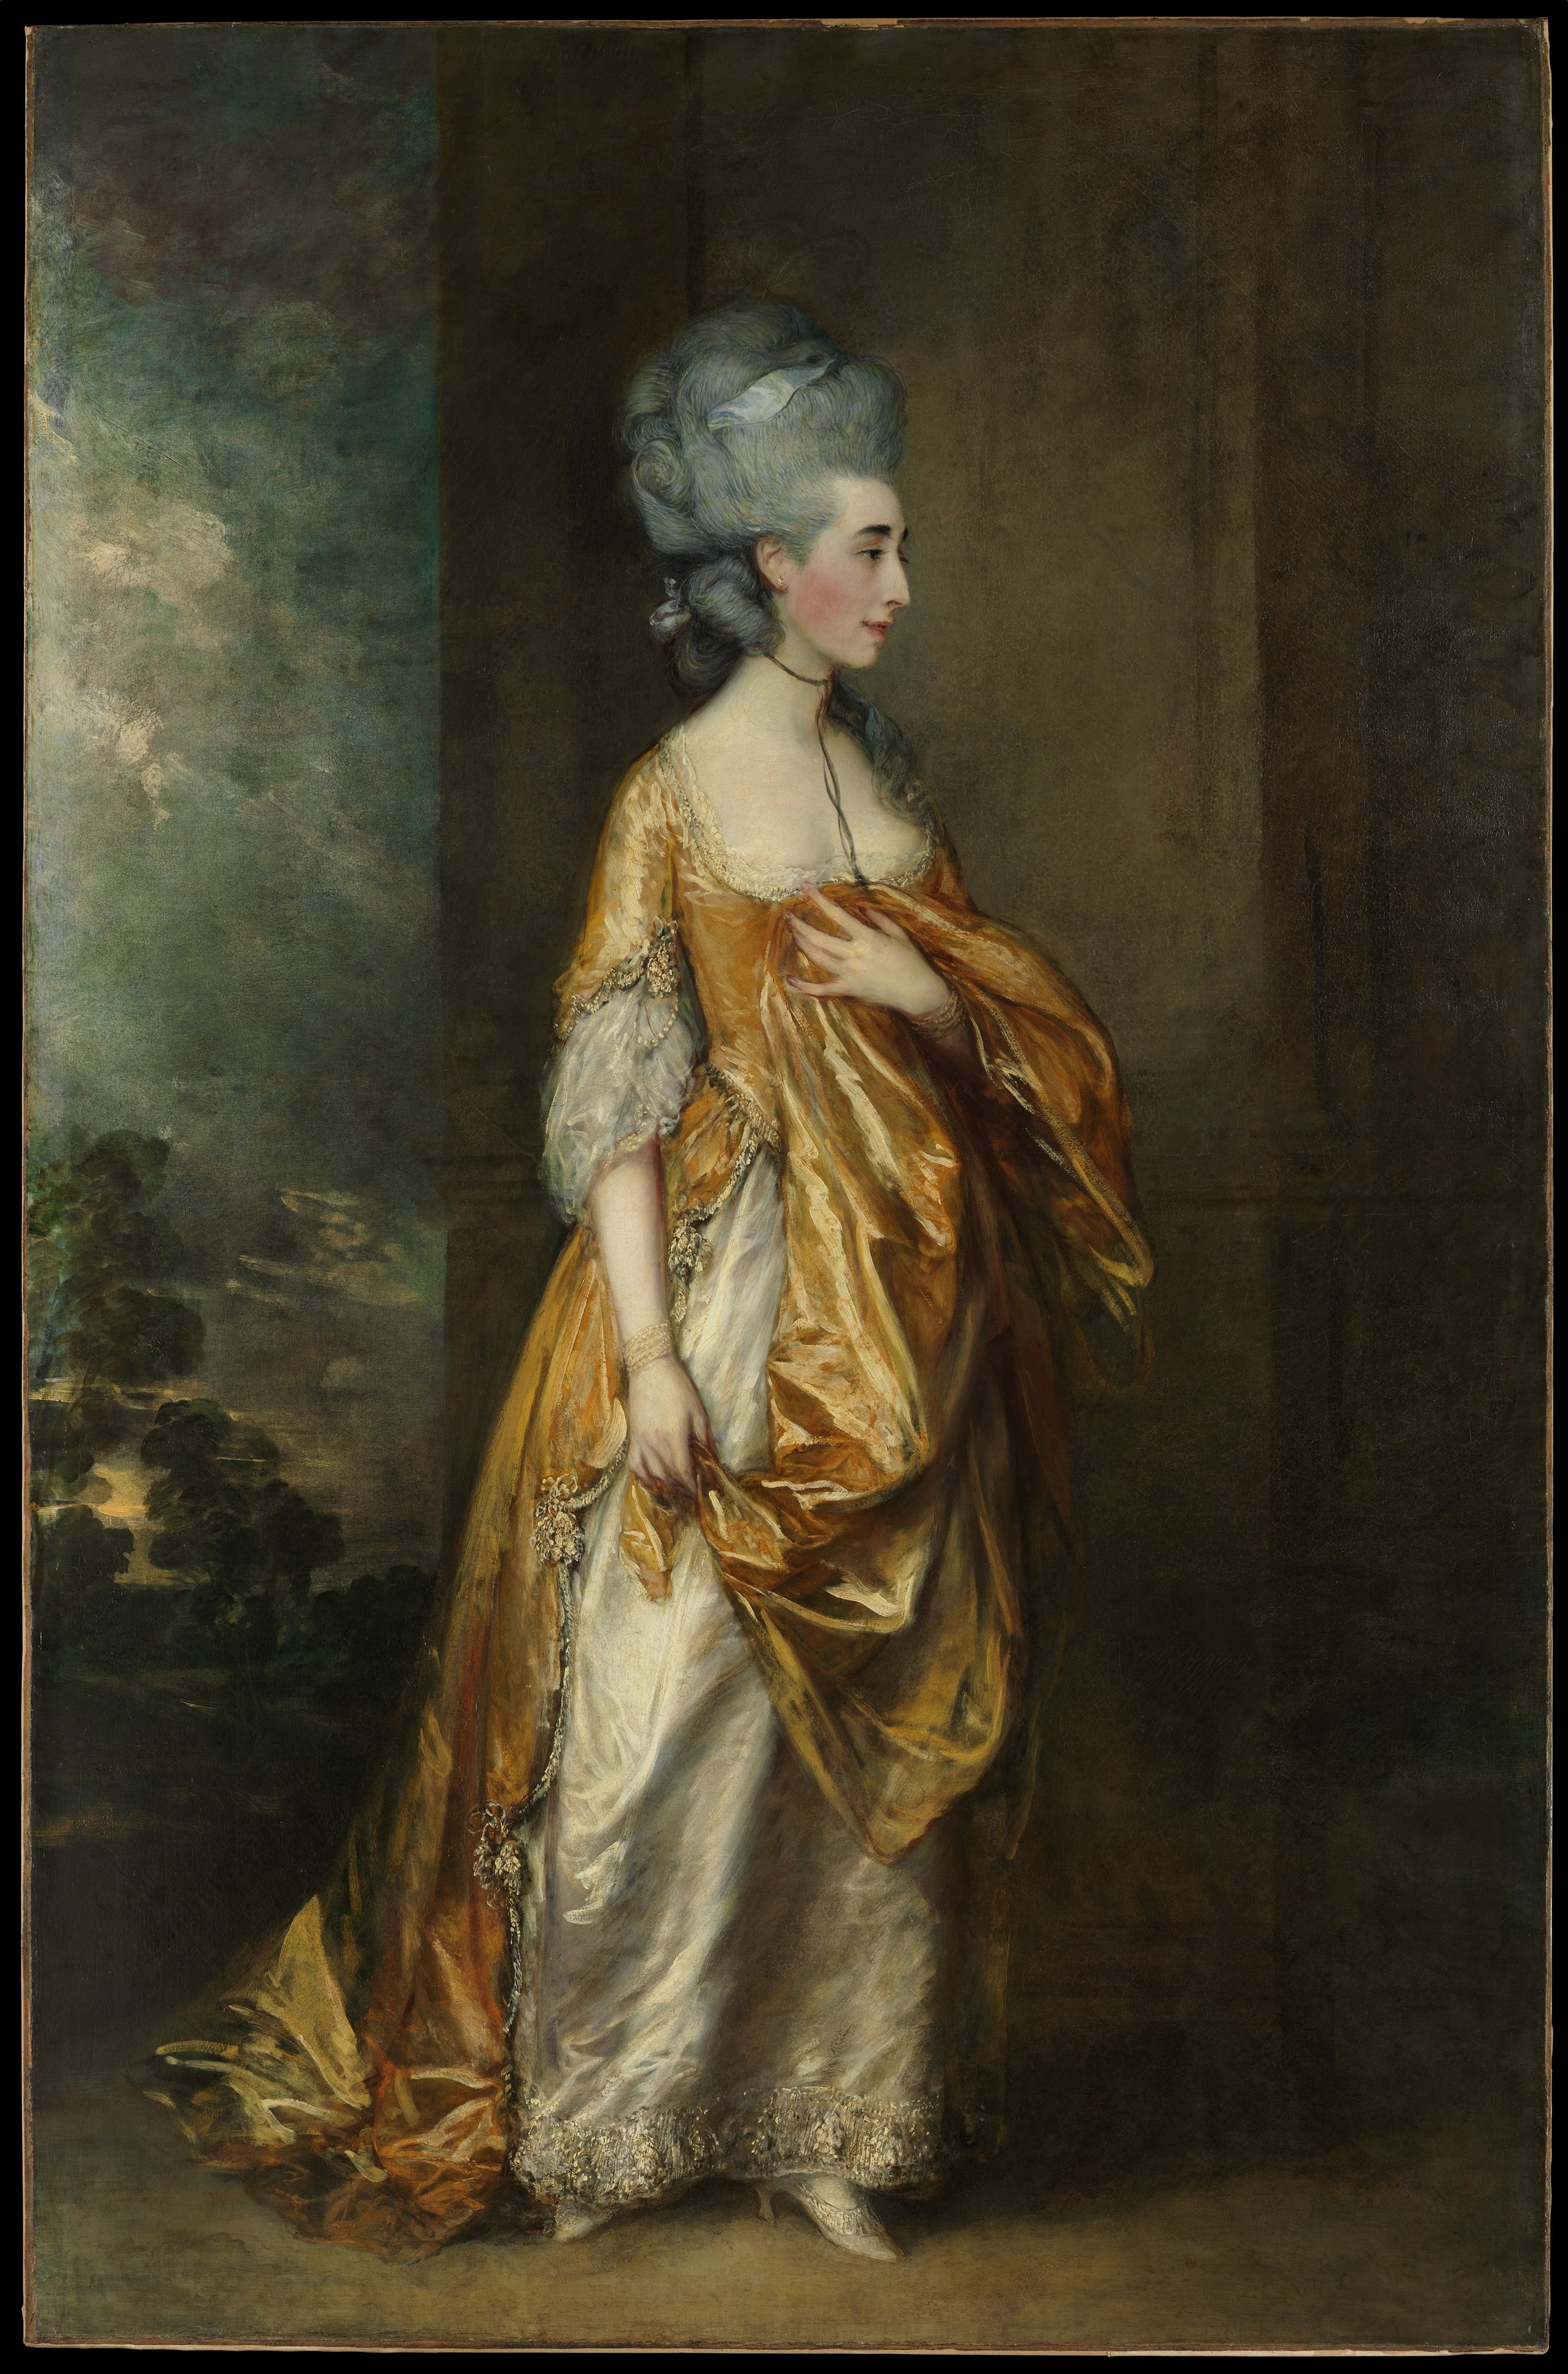 Doamna Grace Dalrymple Elliott by Thomas Gainsborough - 1778 - 234,3 x 153,7cm 